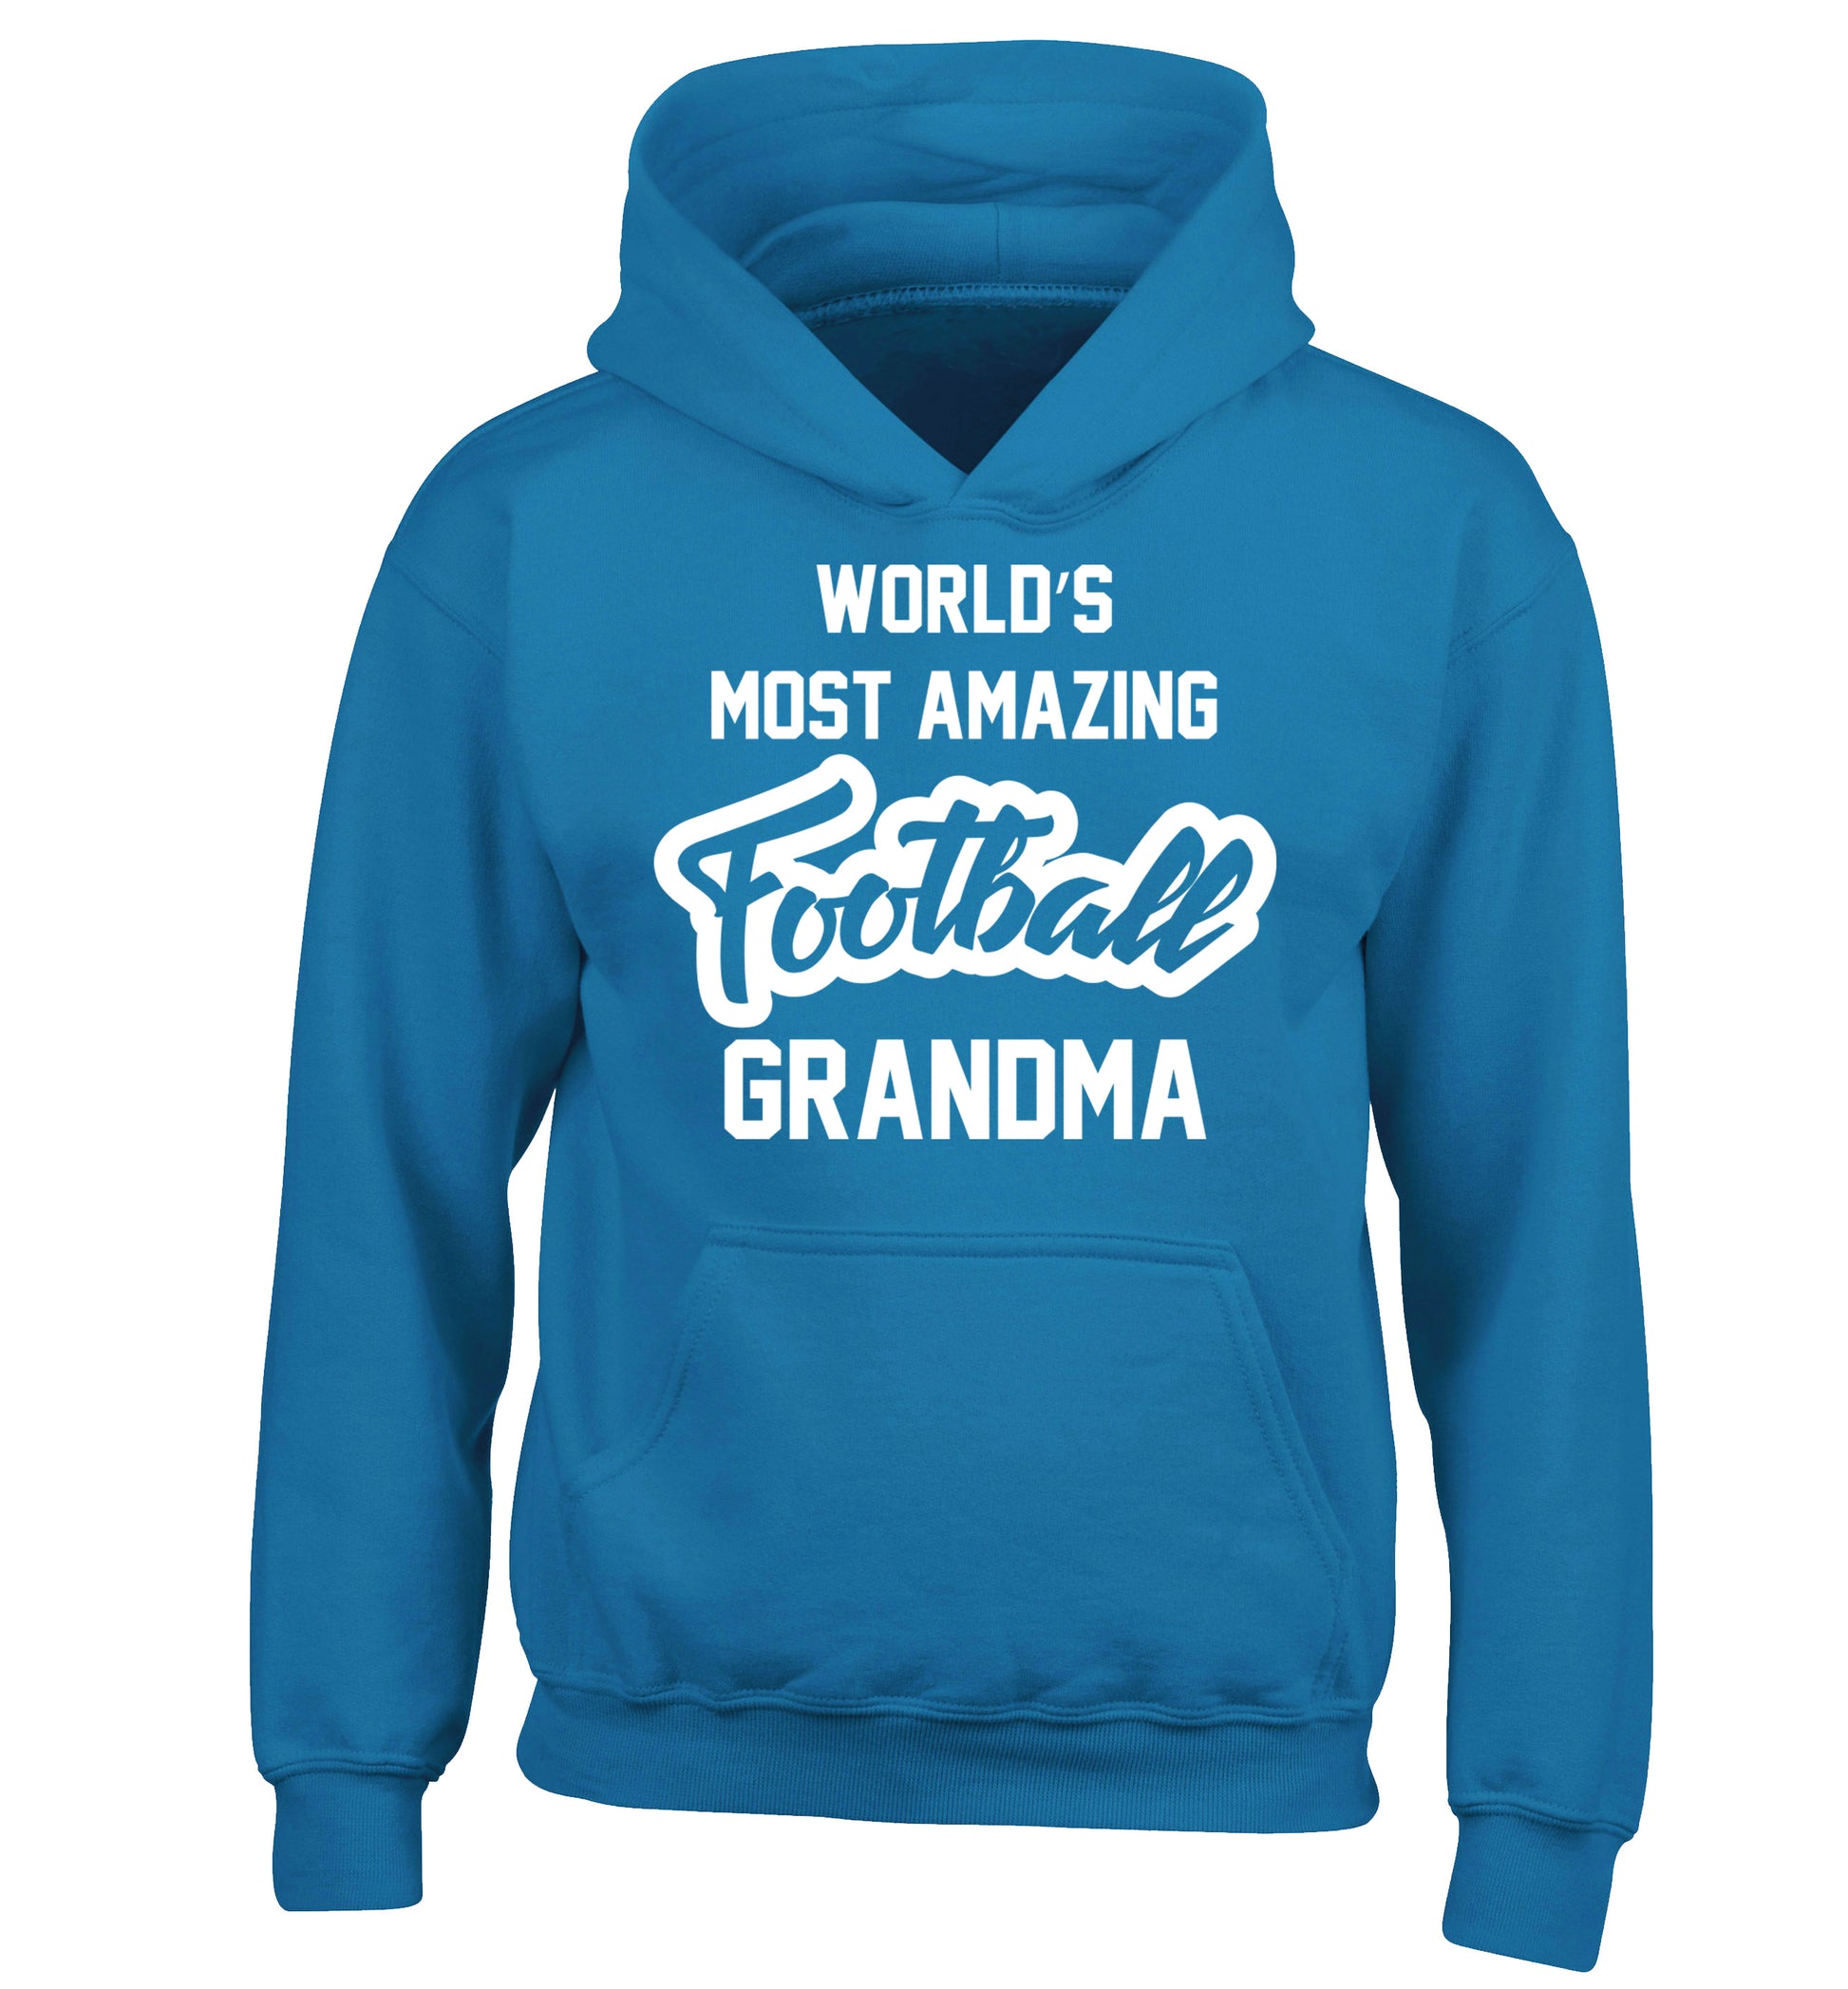 Worlds most amazing football grandma children's blue hoodie 12-14 Years